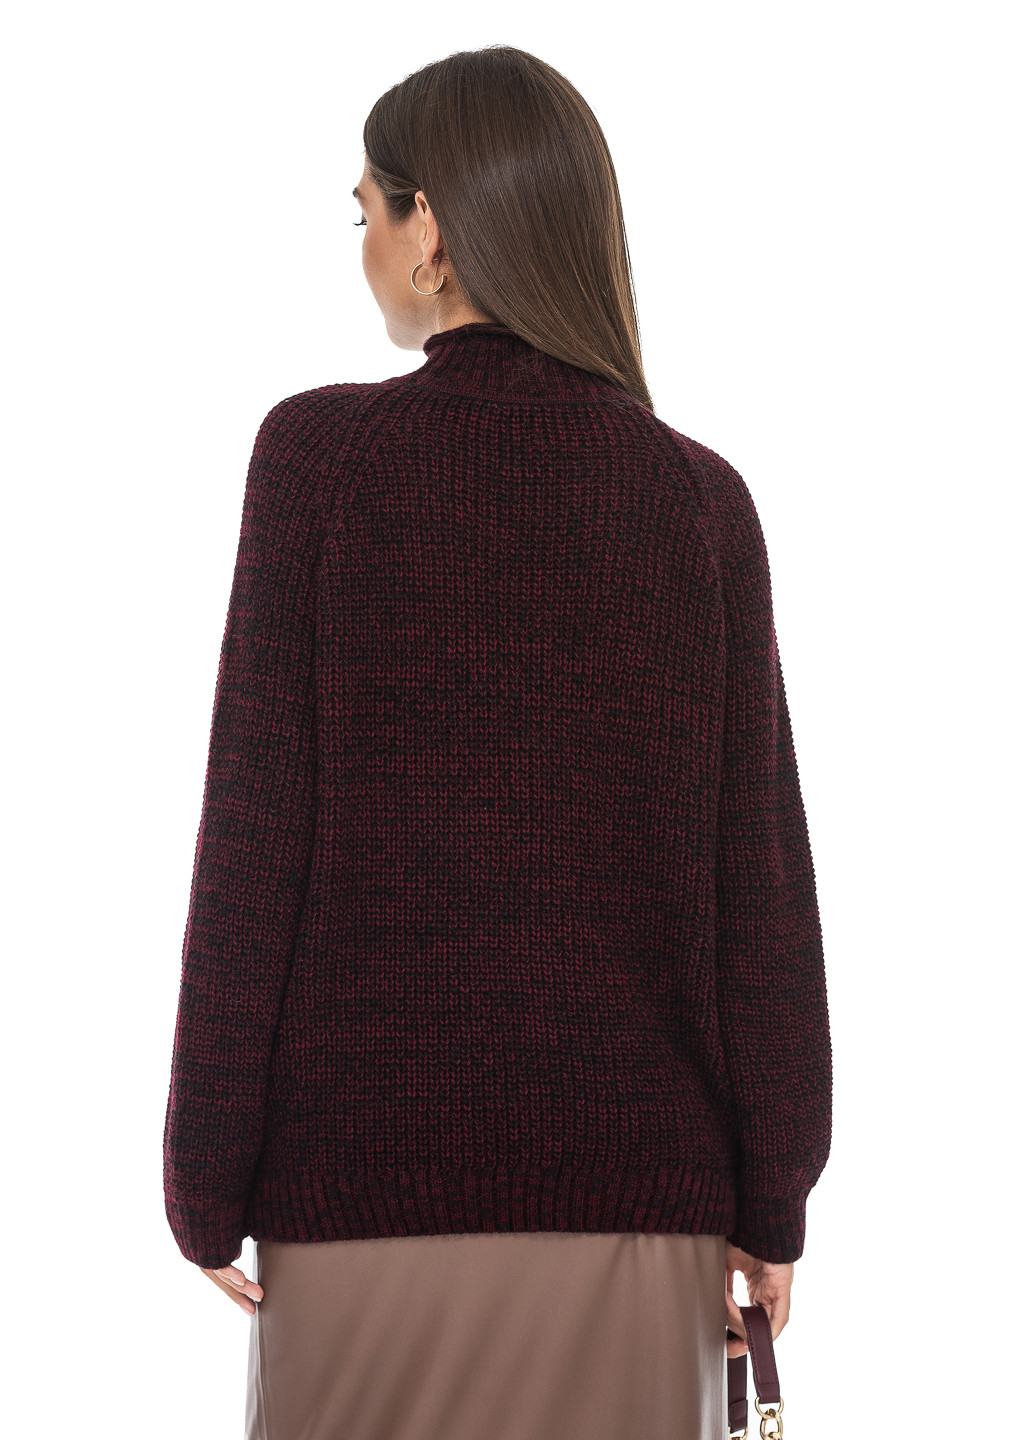 Бордовый меланжевый свитер крупной вязки. SVTR